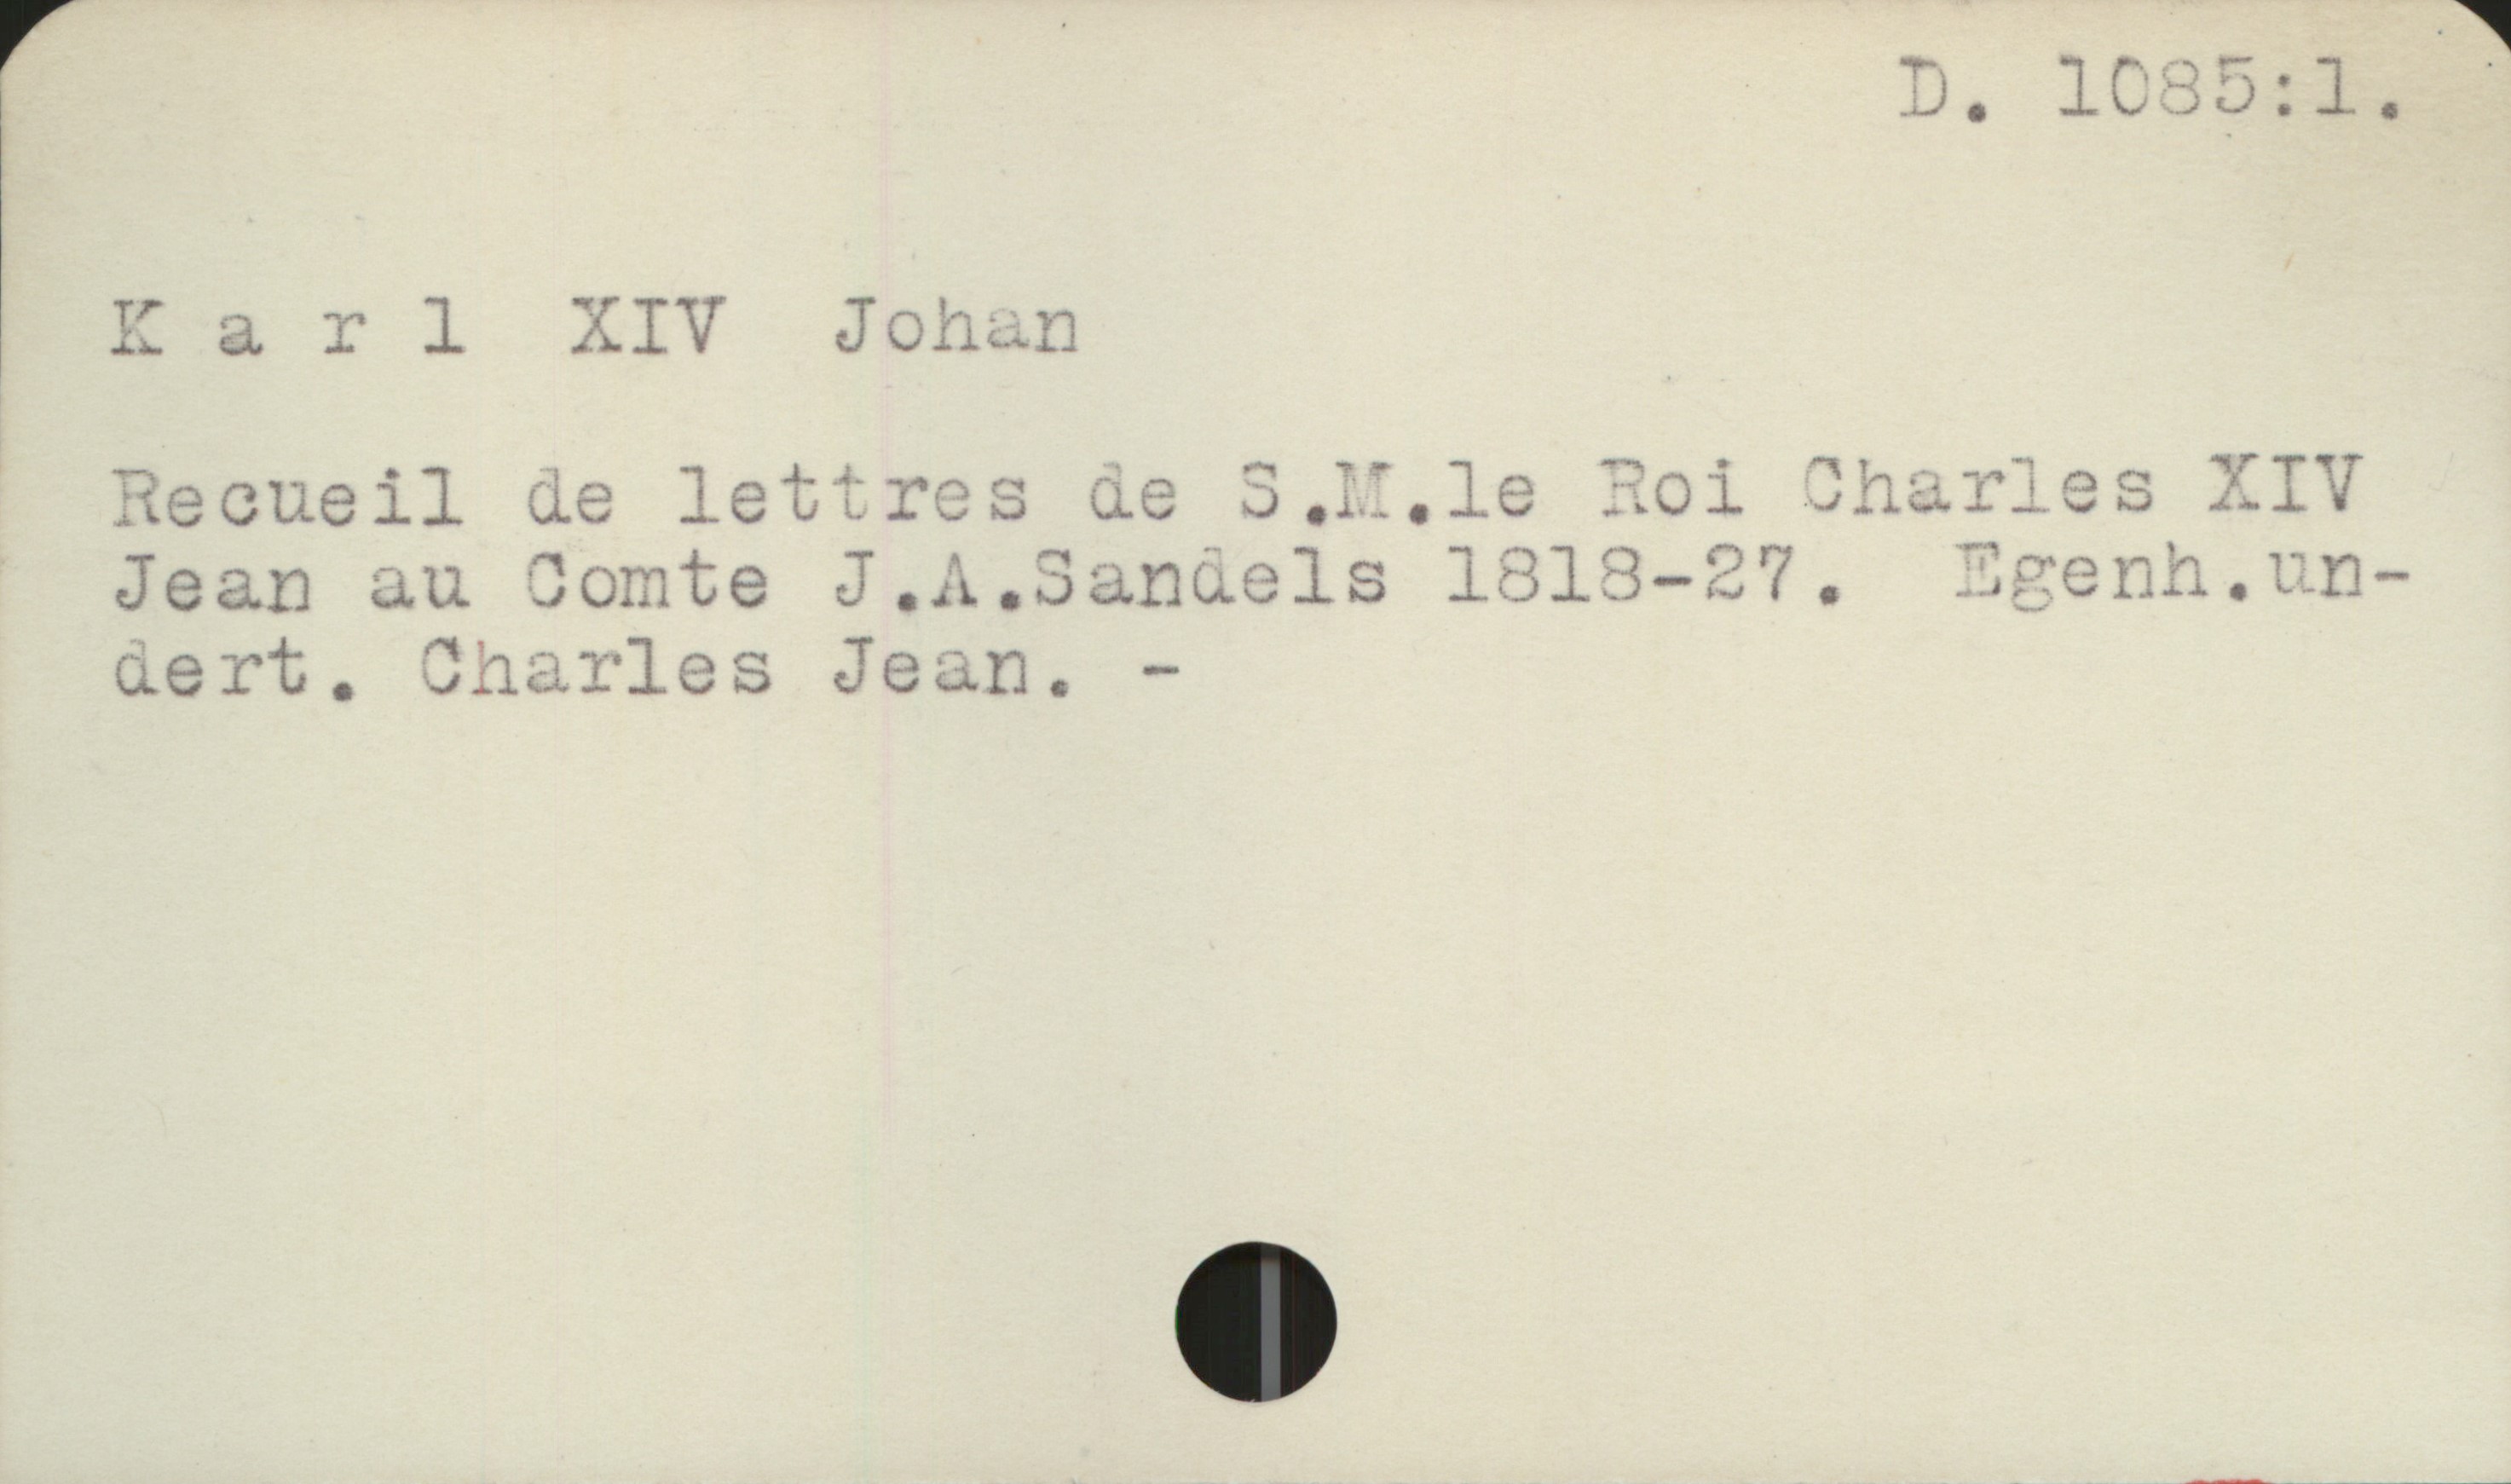  Karl XIV Johan

Recueil de letiros de 3 ,1l.le "oi Dharies XIV
Jean au Somte J.A.Sanuels 1313-27.
aert,., Charles Jean. -

